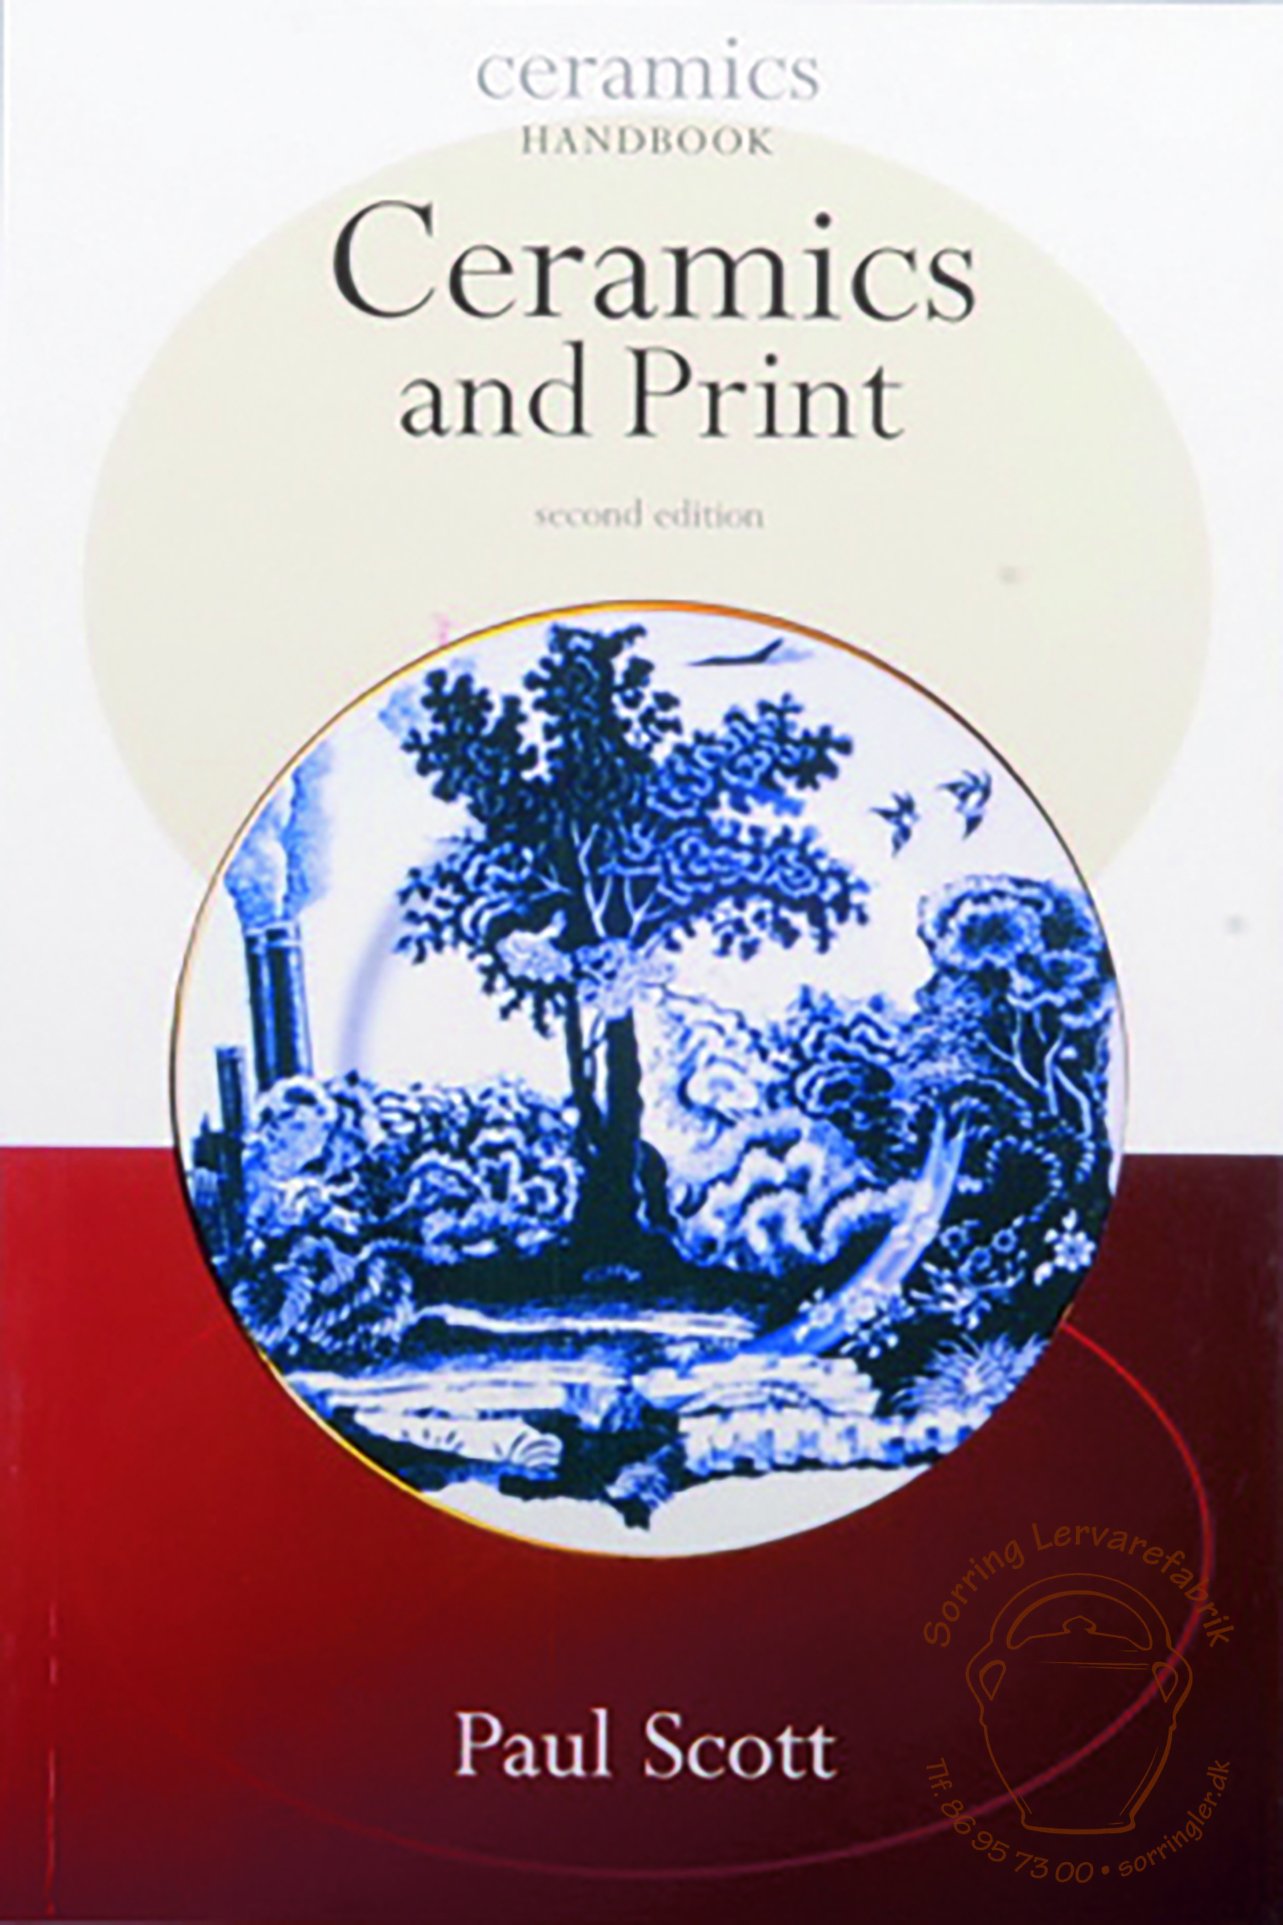 Bog : "Ceramics and Print" - Sorring